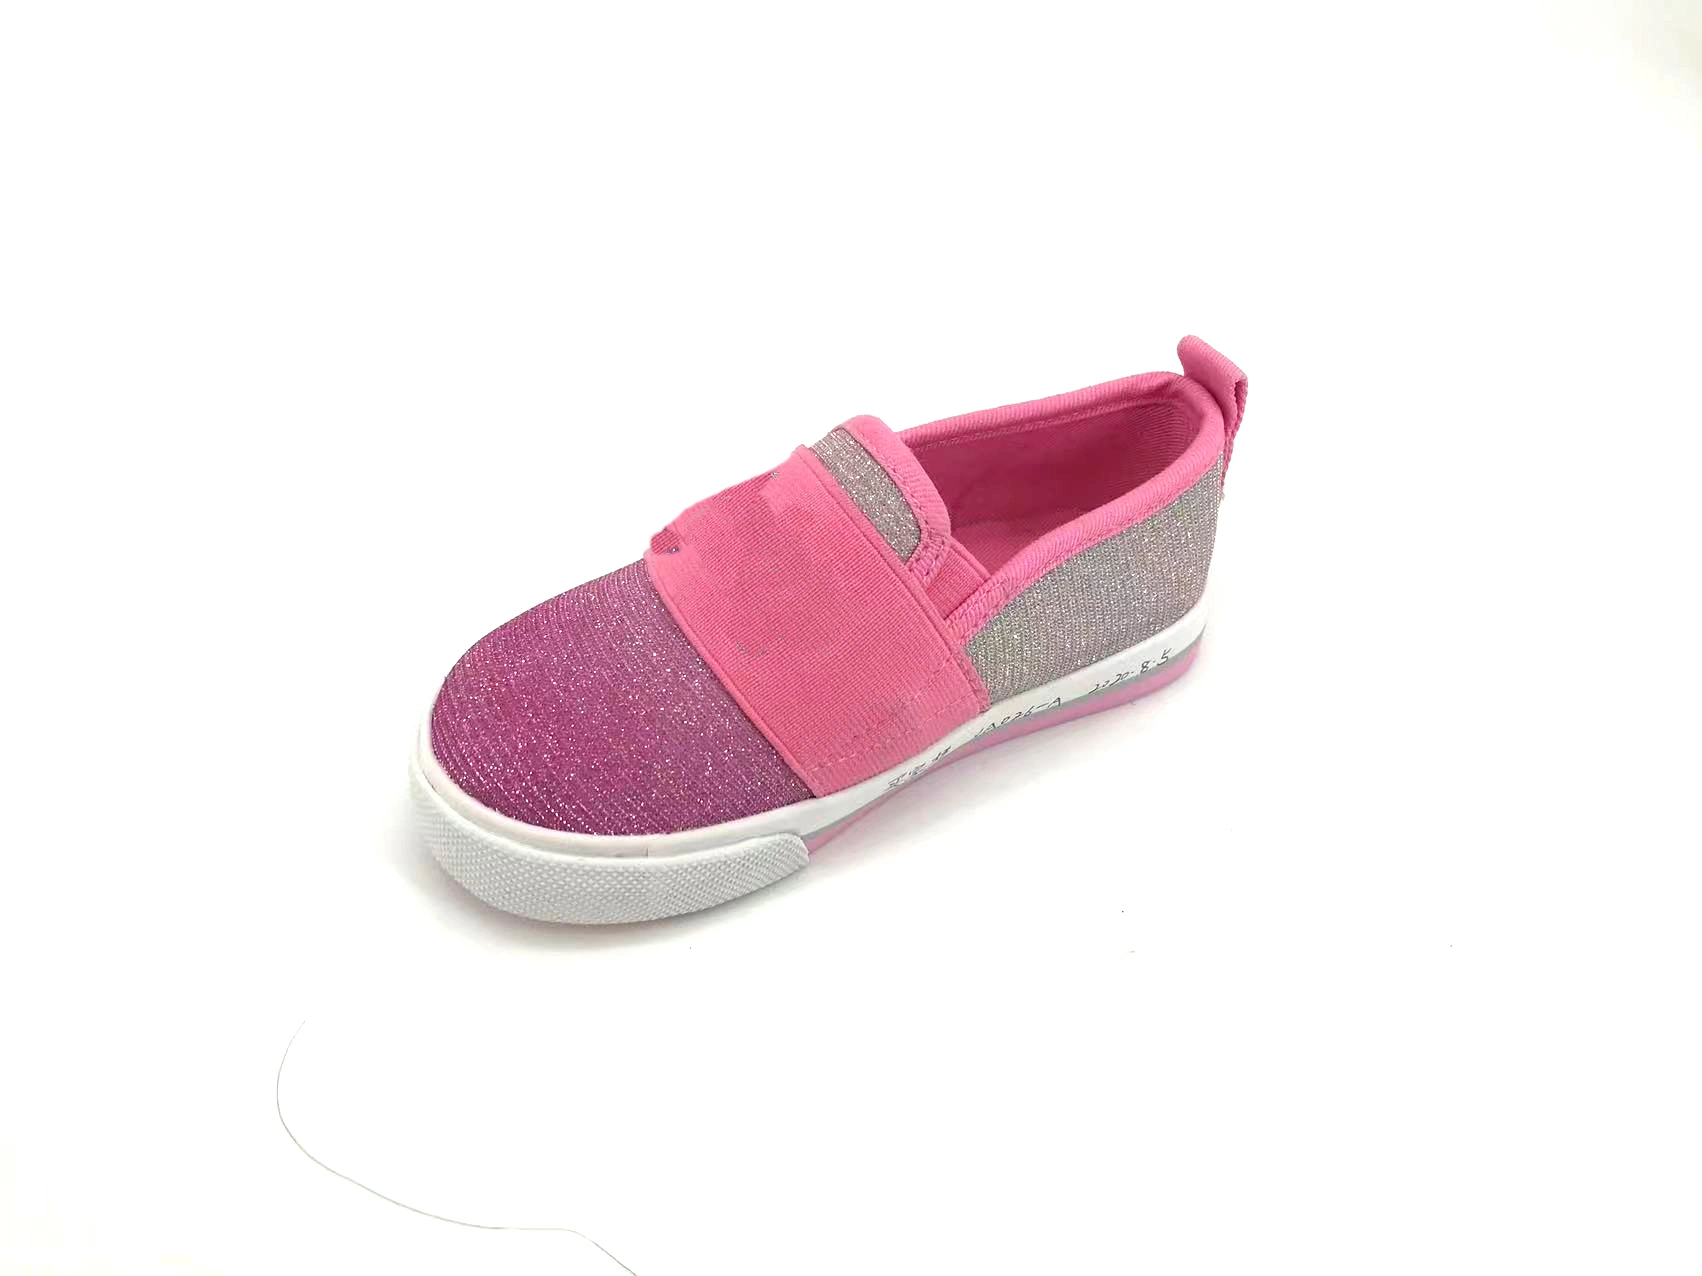 OEM Service Cute Kids Lovely Style Schuhe Freizeit Kleinkinder Sneakers Freizeitschuhe Für Kinder